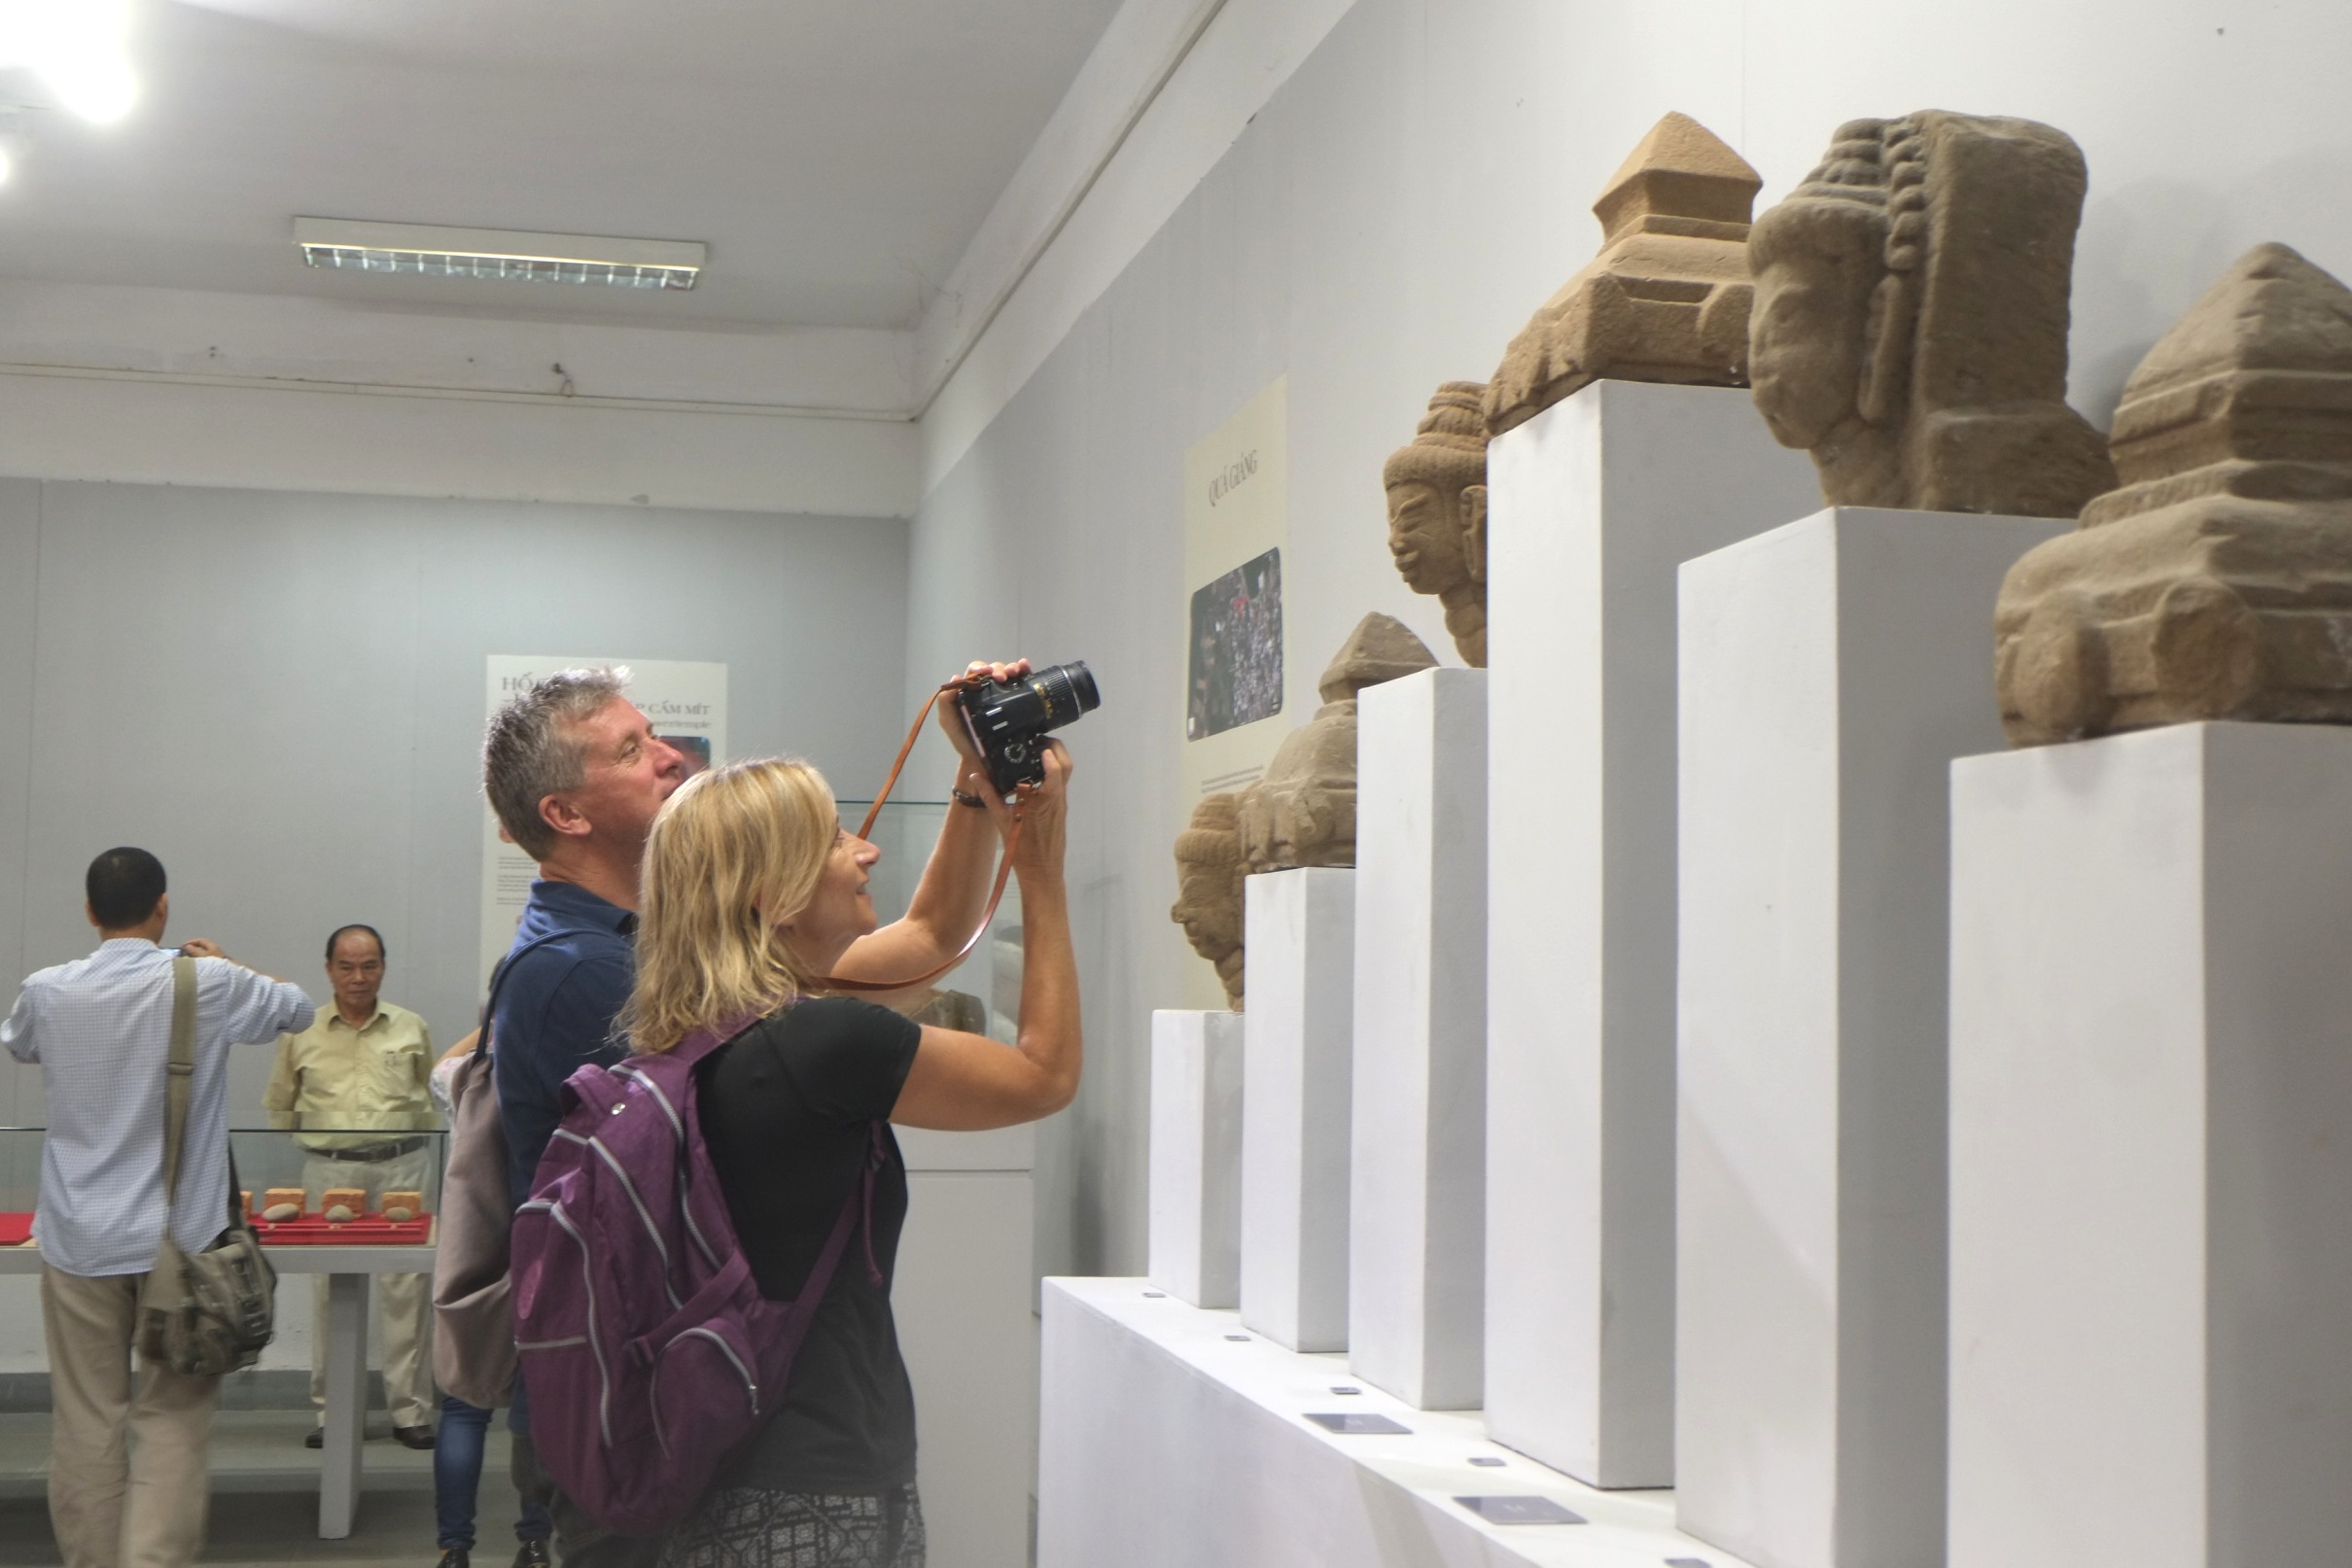 Đà Nẵng: Bảo tàng điêu khắc Chăm trưng bày hiện vật mới